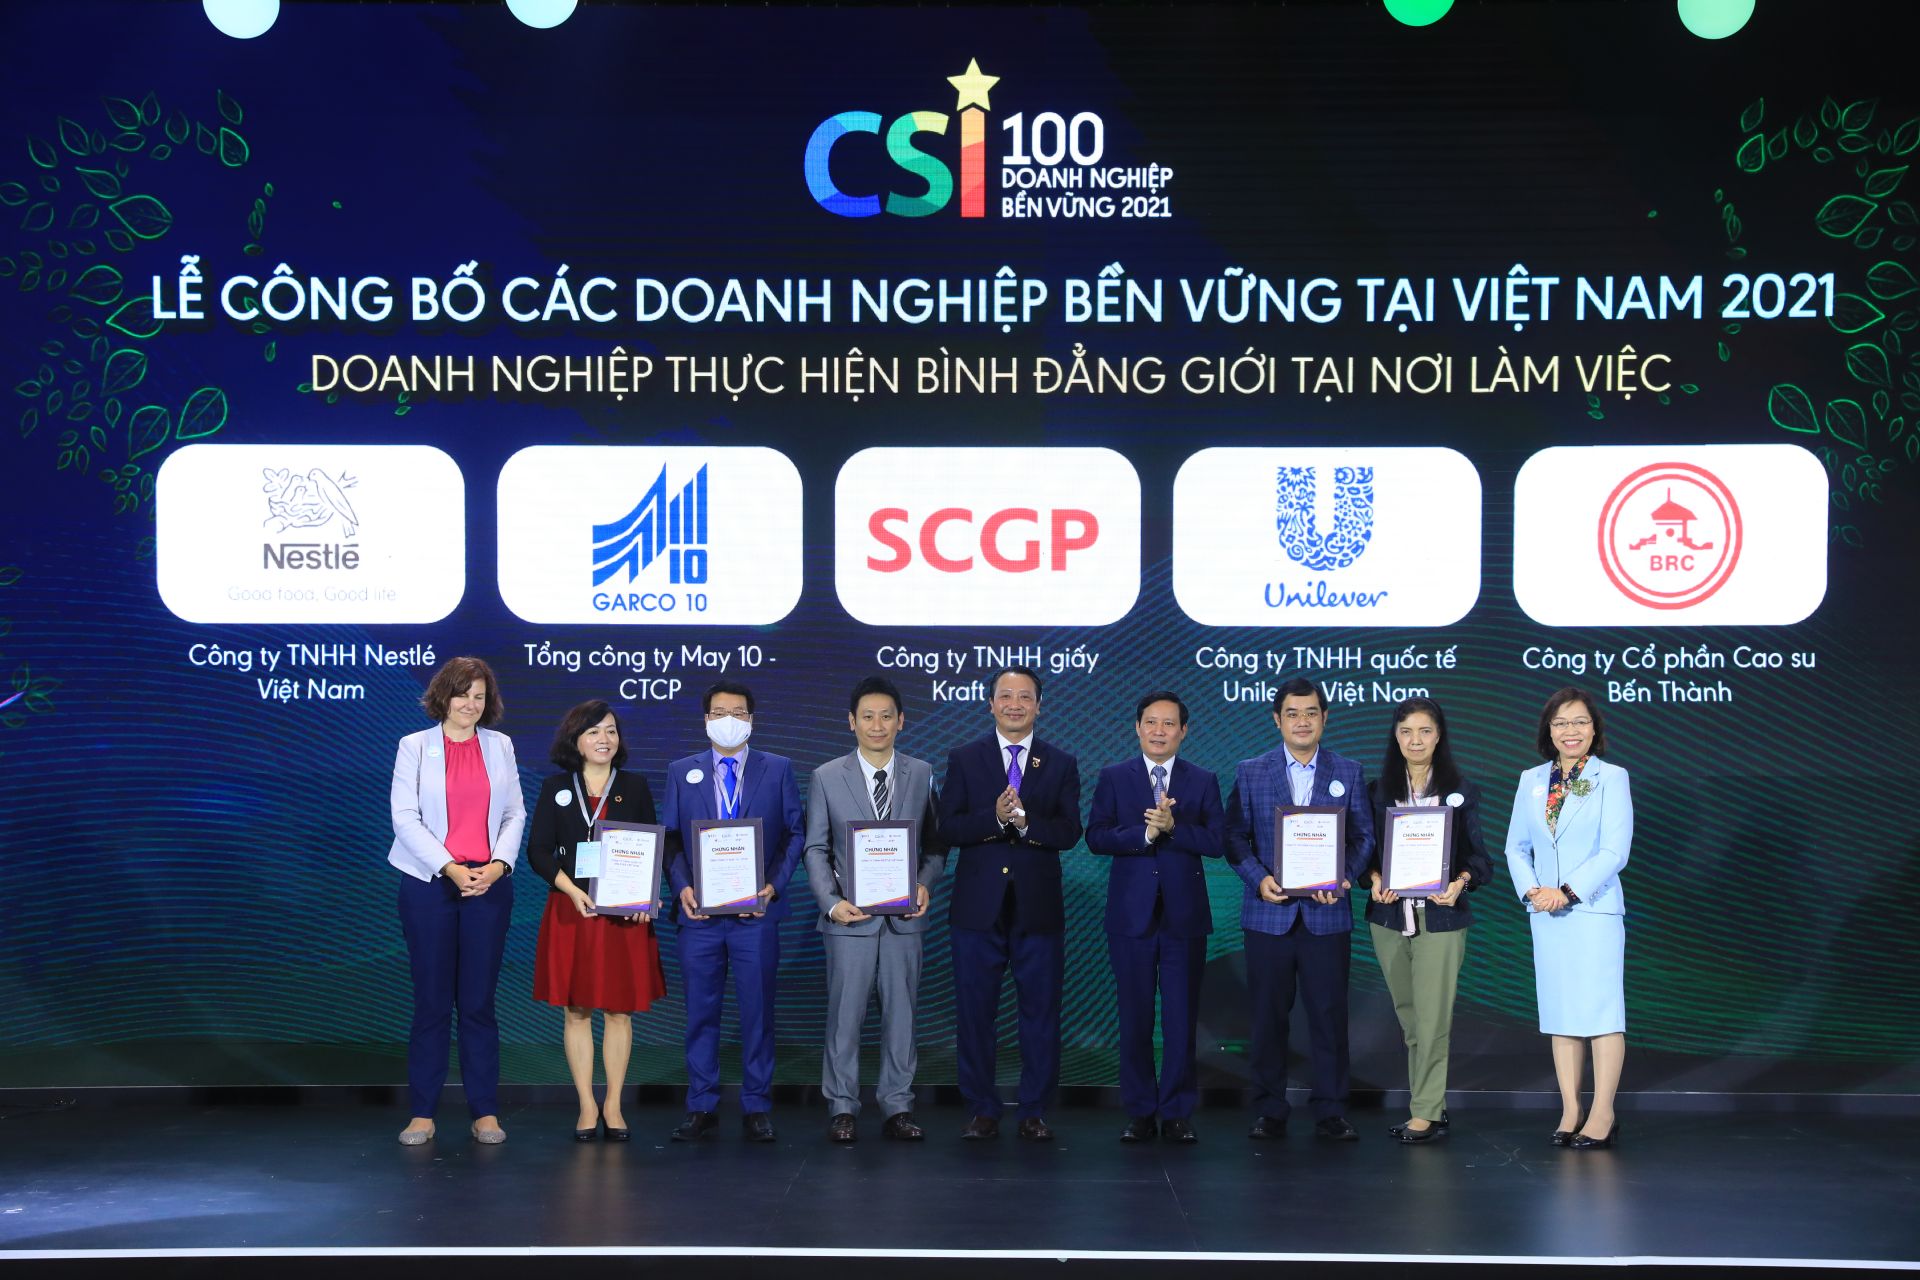 Đại diện Nestlé Việt Nam nhận Giấy chứng nhận doanh nghiệp tiêu biểu thực hiện bình đẳng giới tại nơi làm việc